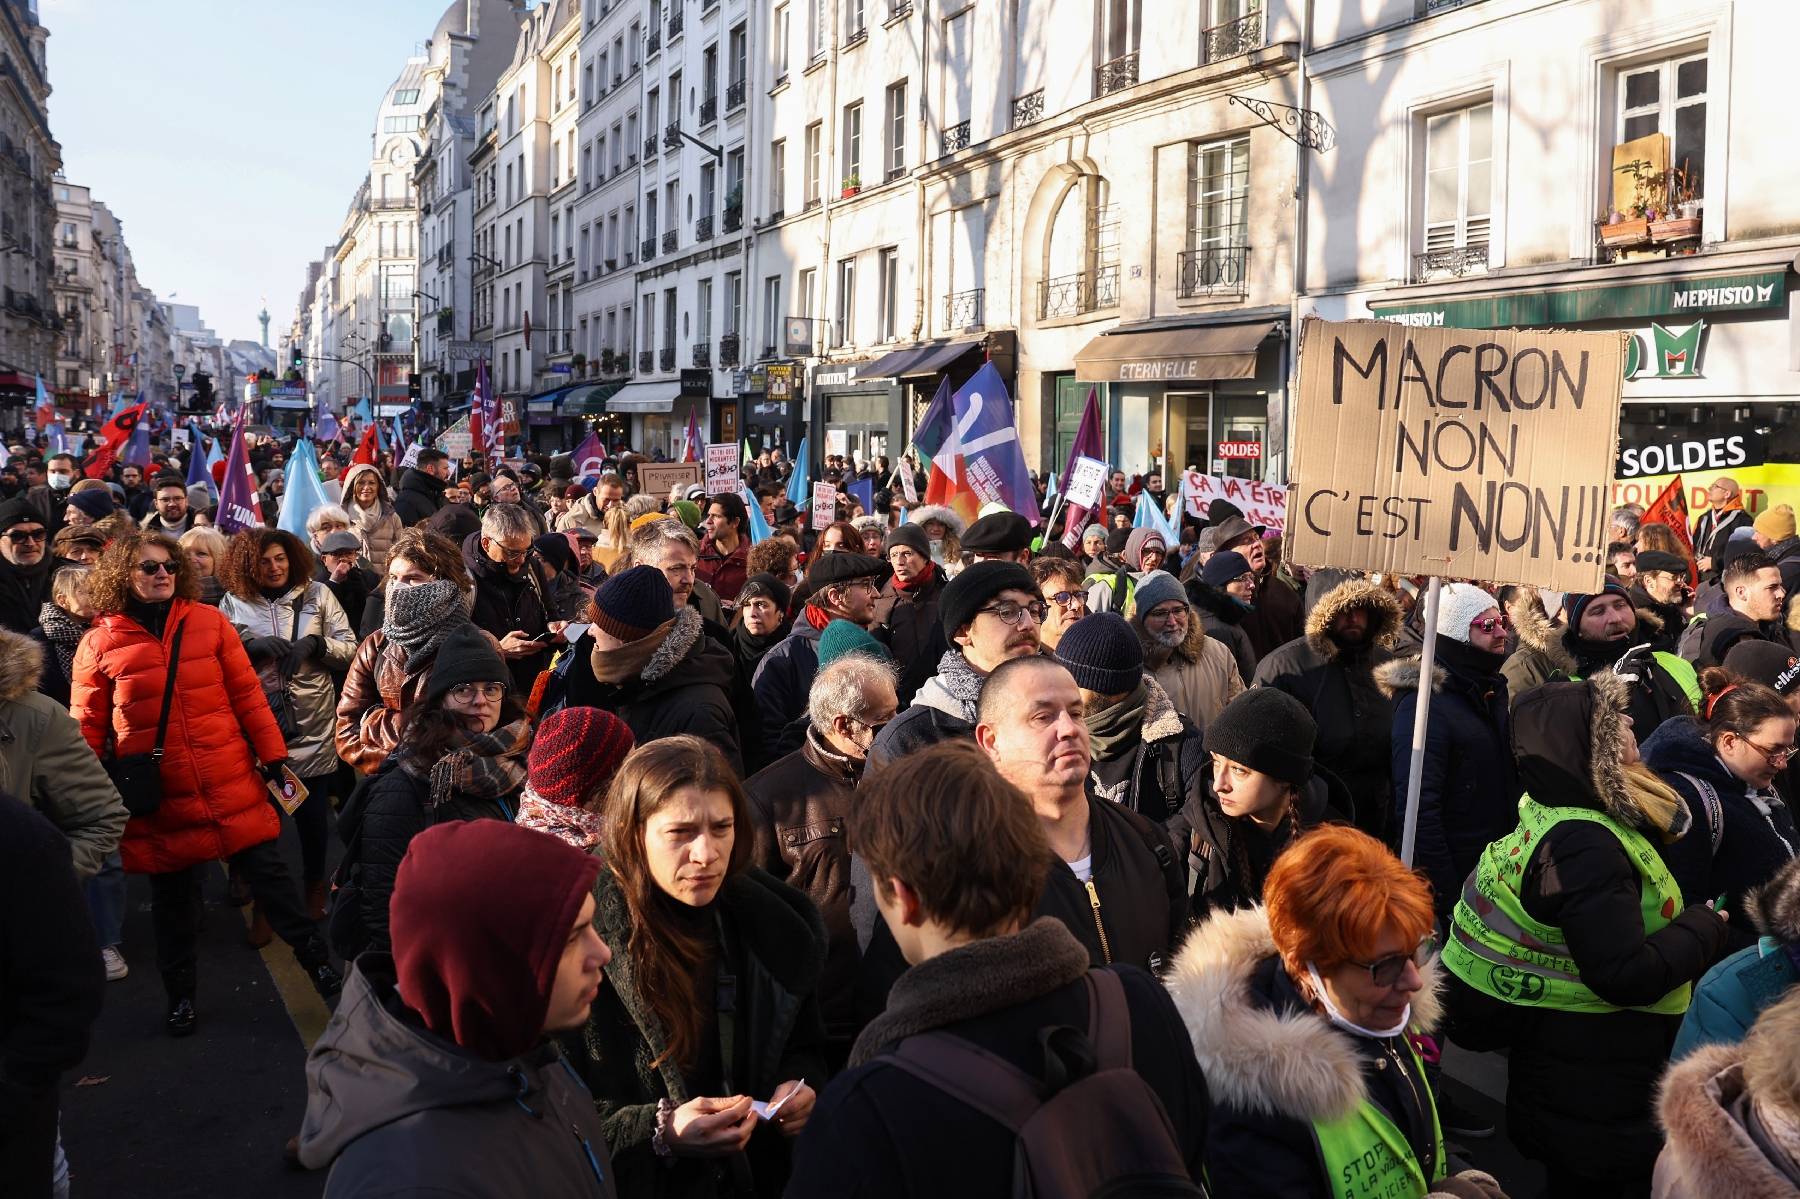 Réforme des retraites : 150 000 personnes à Paris samedi selon les organisateurs